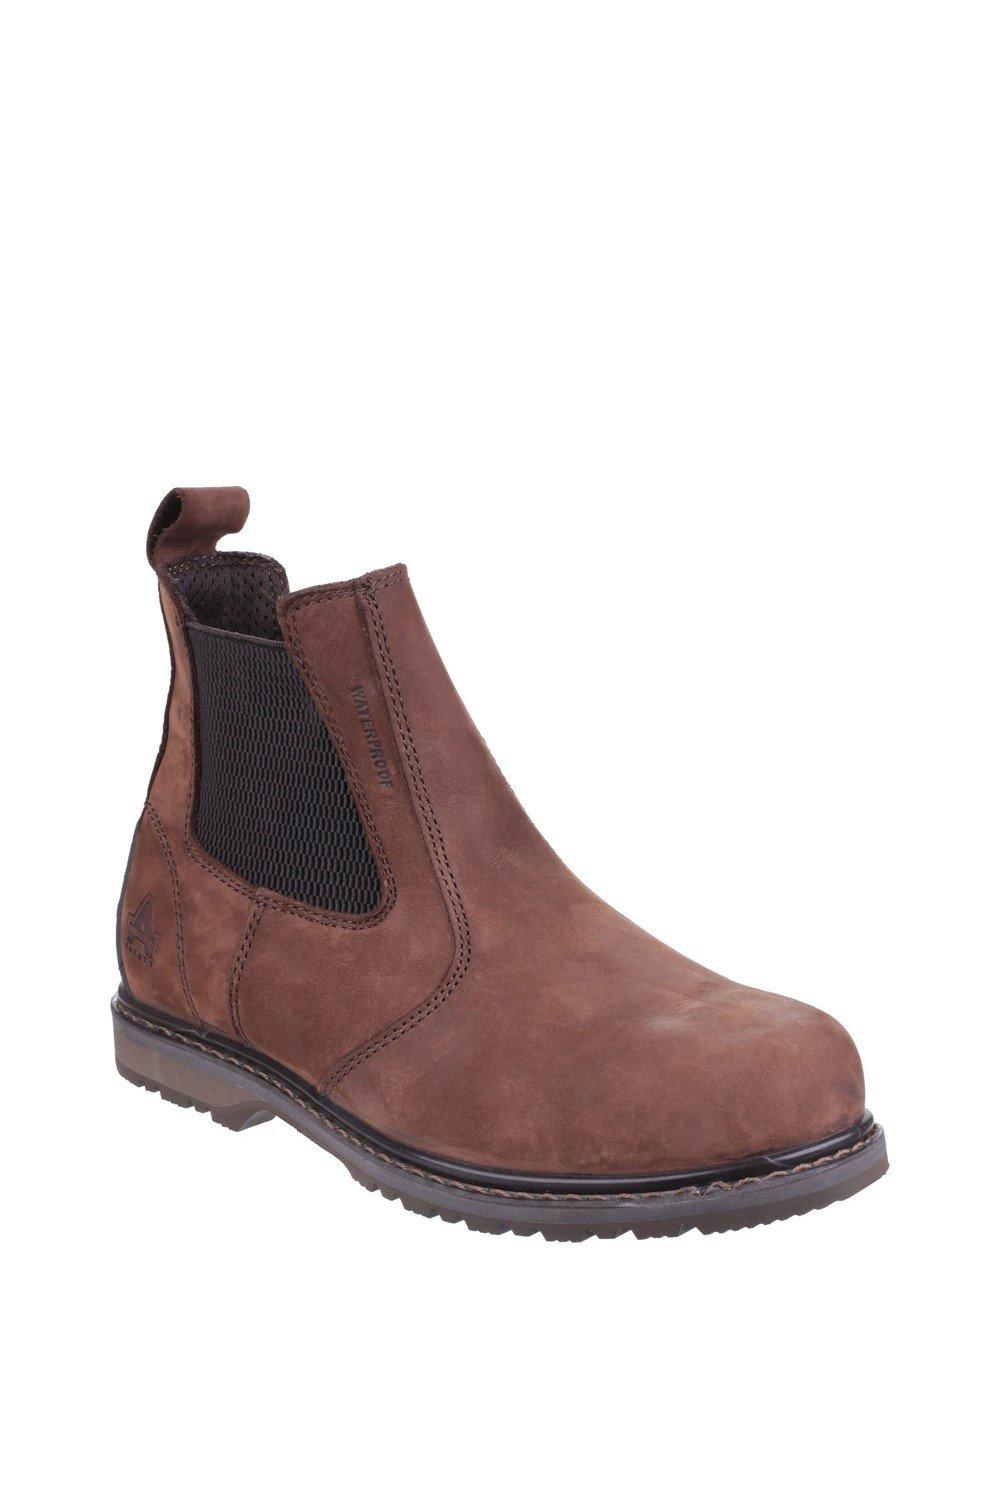 Защитные ботинки 'AS148 SPERRIN' Amblers Safety, коричневый мужские нескользящие кроссовки легкие дышащие защитные рабочие ботинки со стальным носком сетчатые защитные ботинки новинка 2022